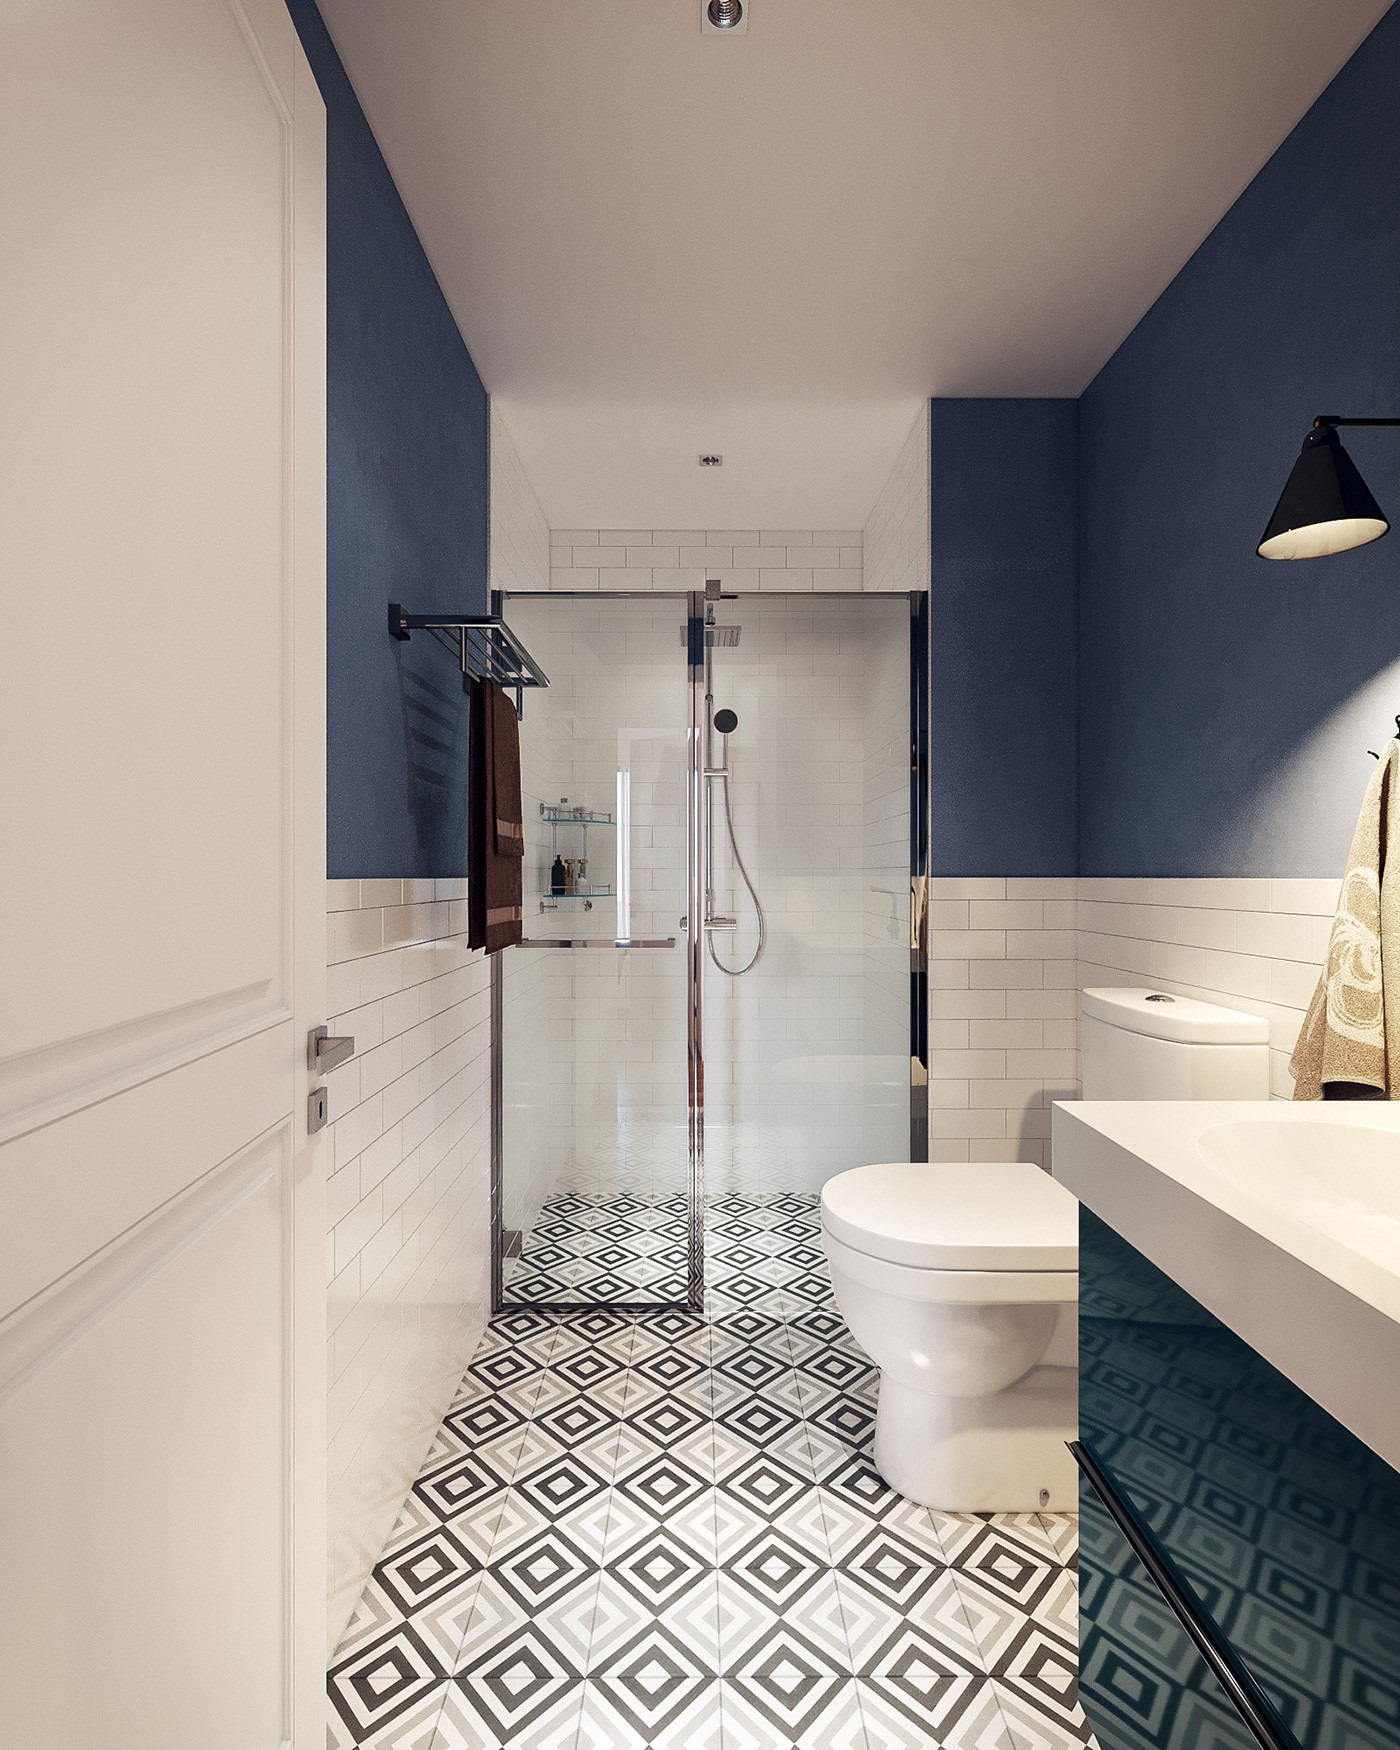 Hình ảnh phòng tắm vơi 2 màu xanh trắng chủ đạo, gạch bông lát sàn, vách tắm kính